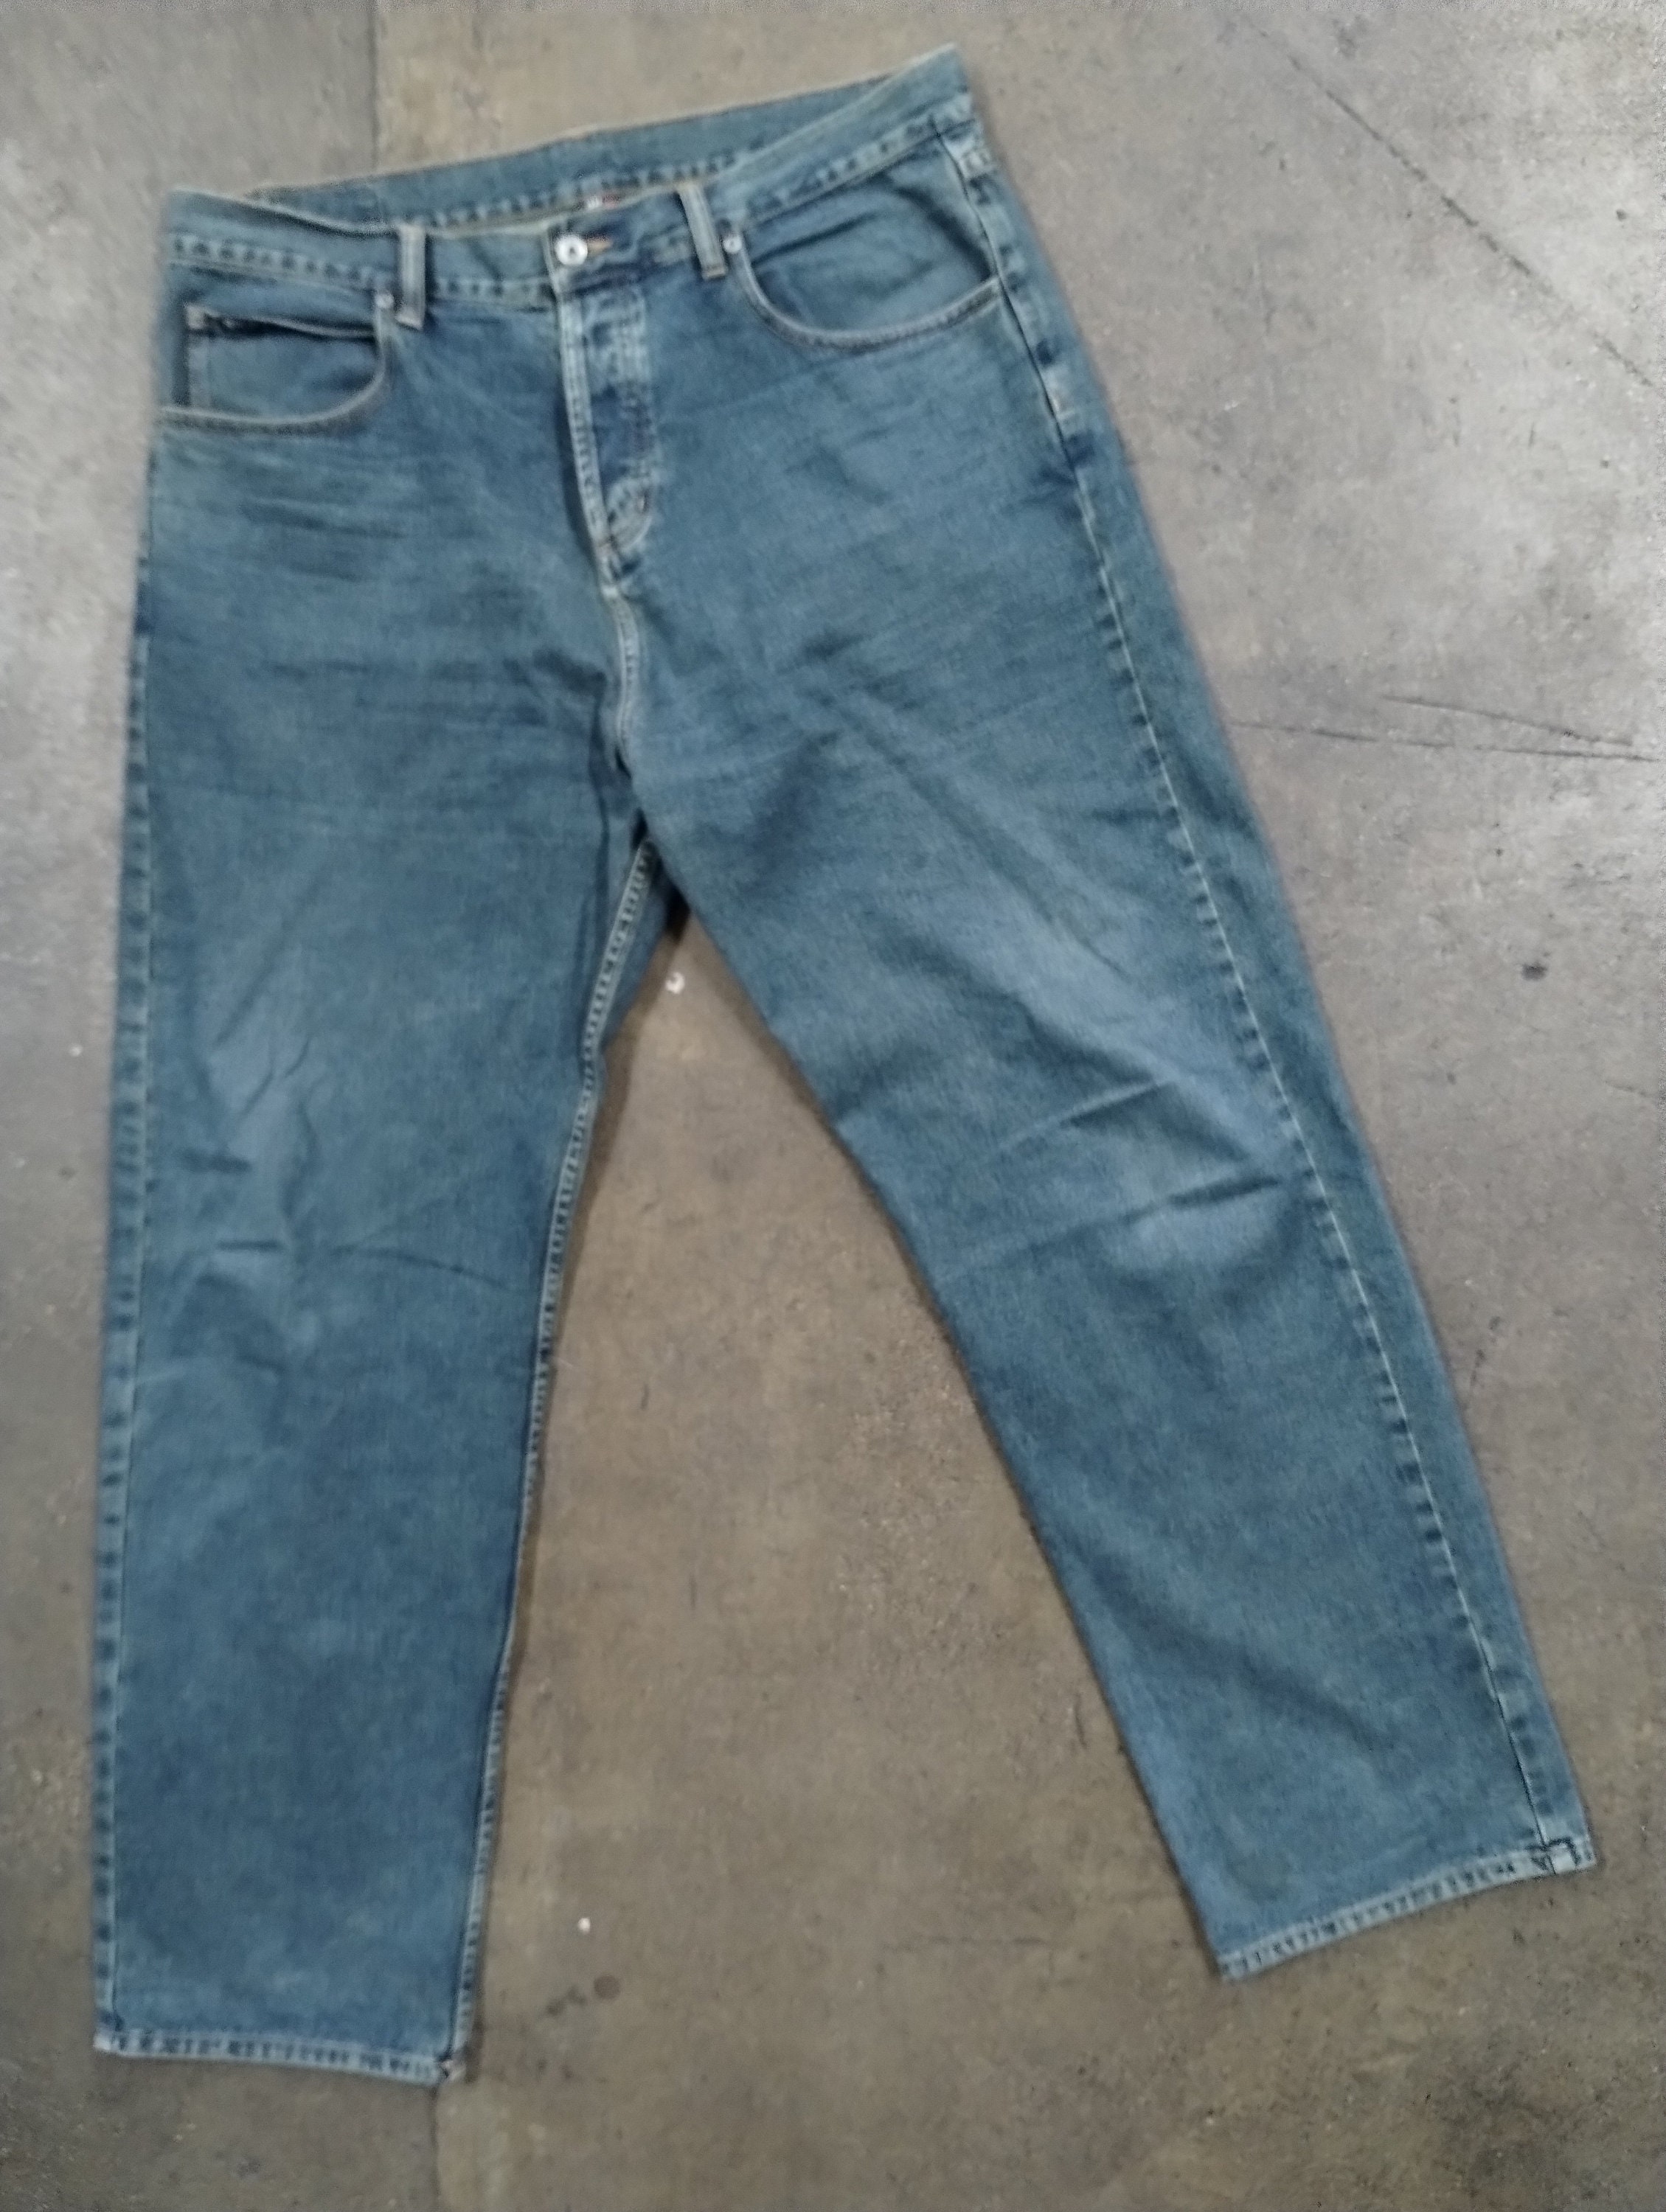 Vintage NBA Denim Patch Jeans Basketball Patches Blue Cotton Men's Size  34x34